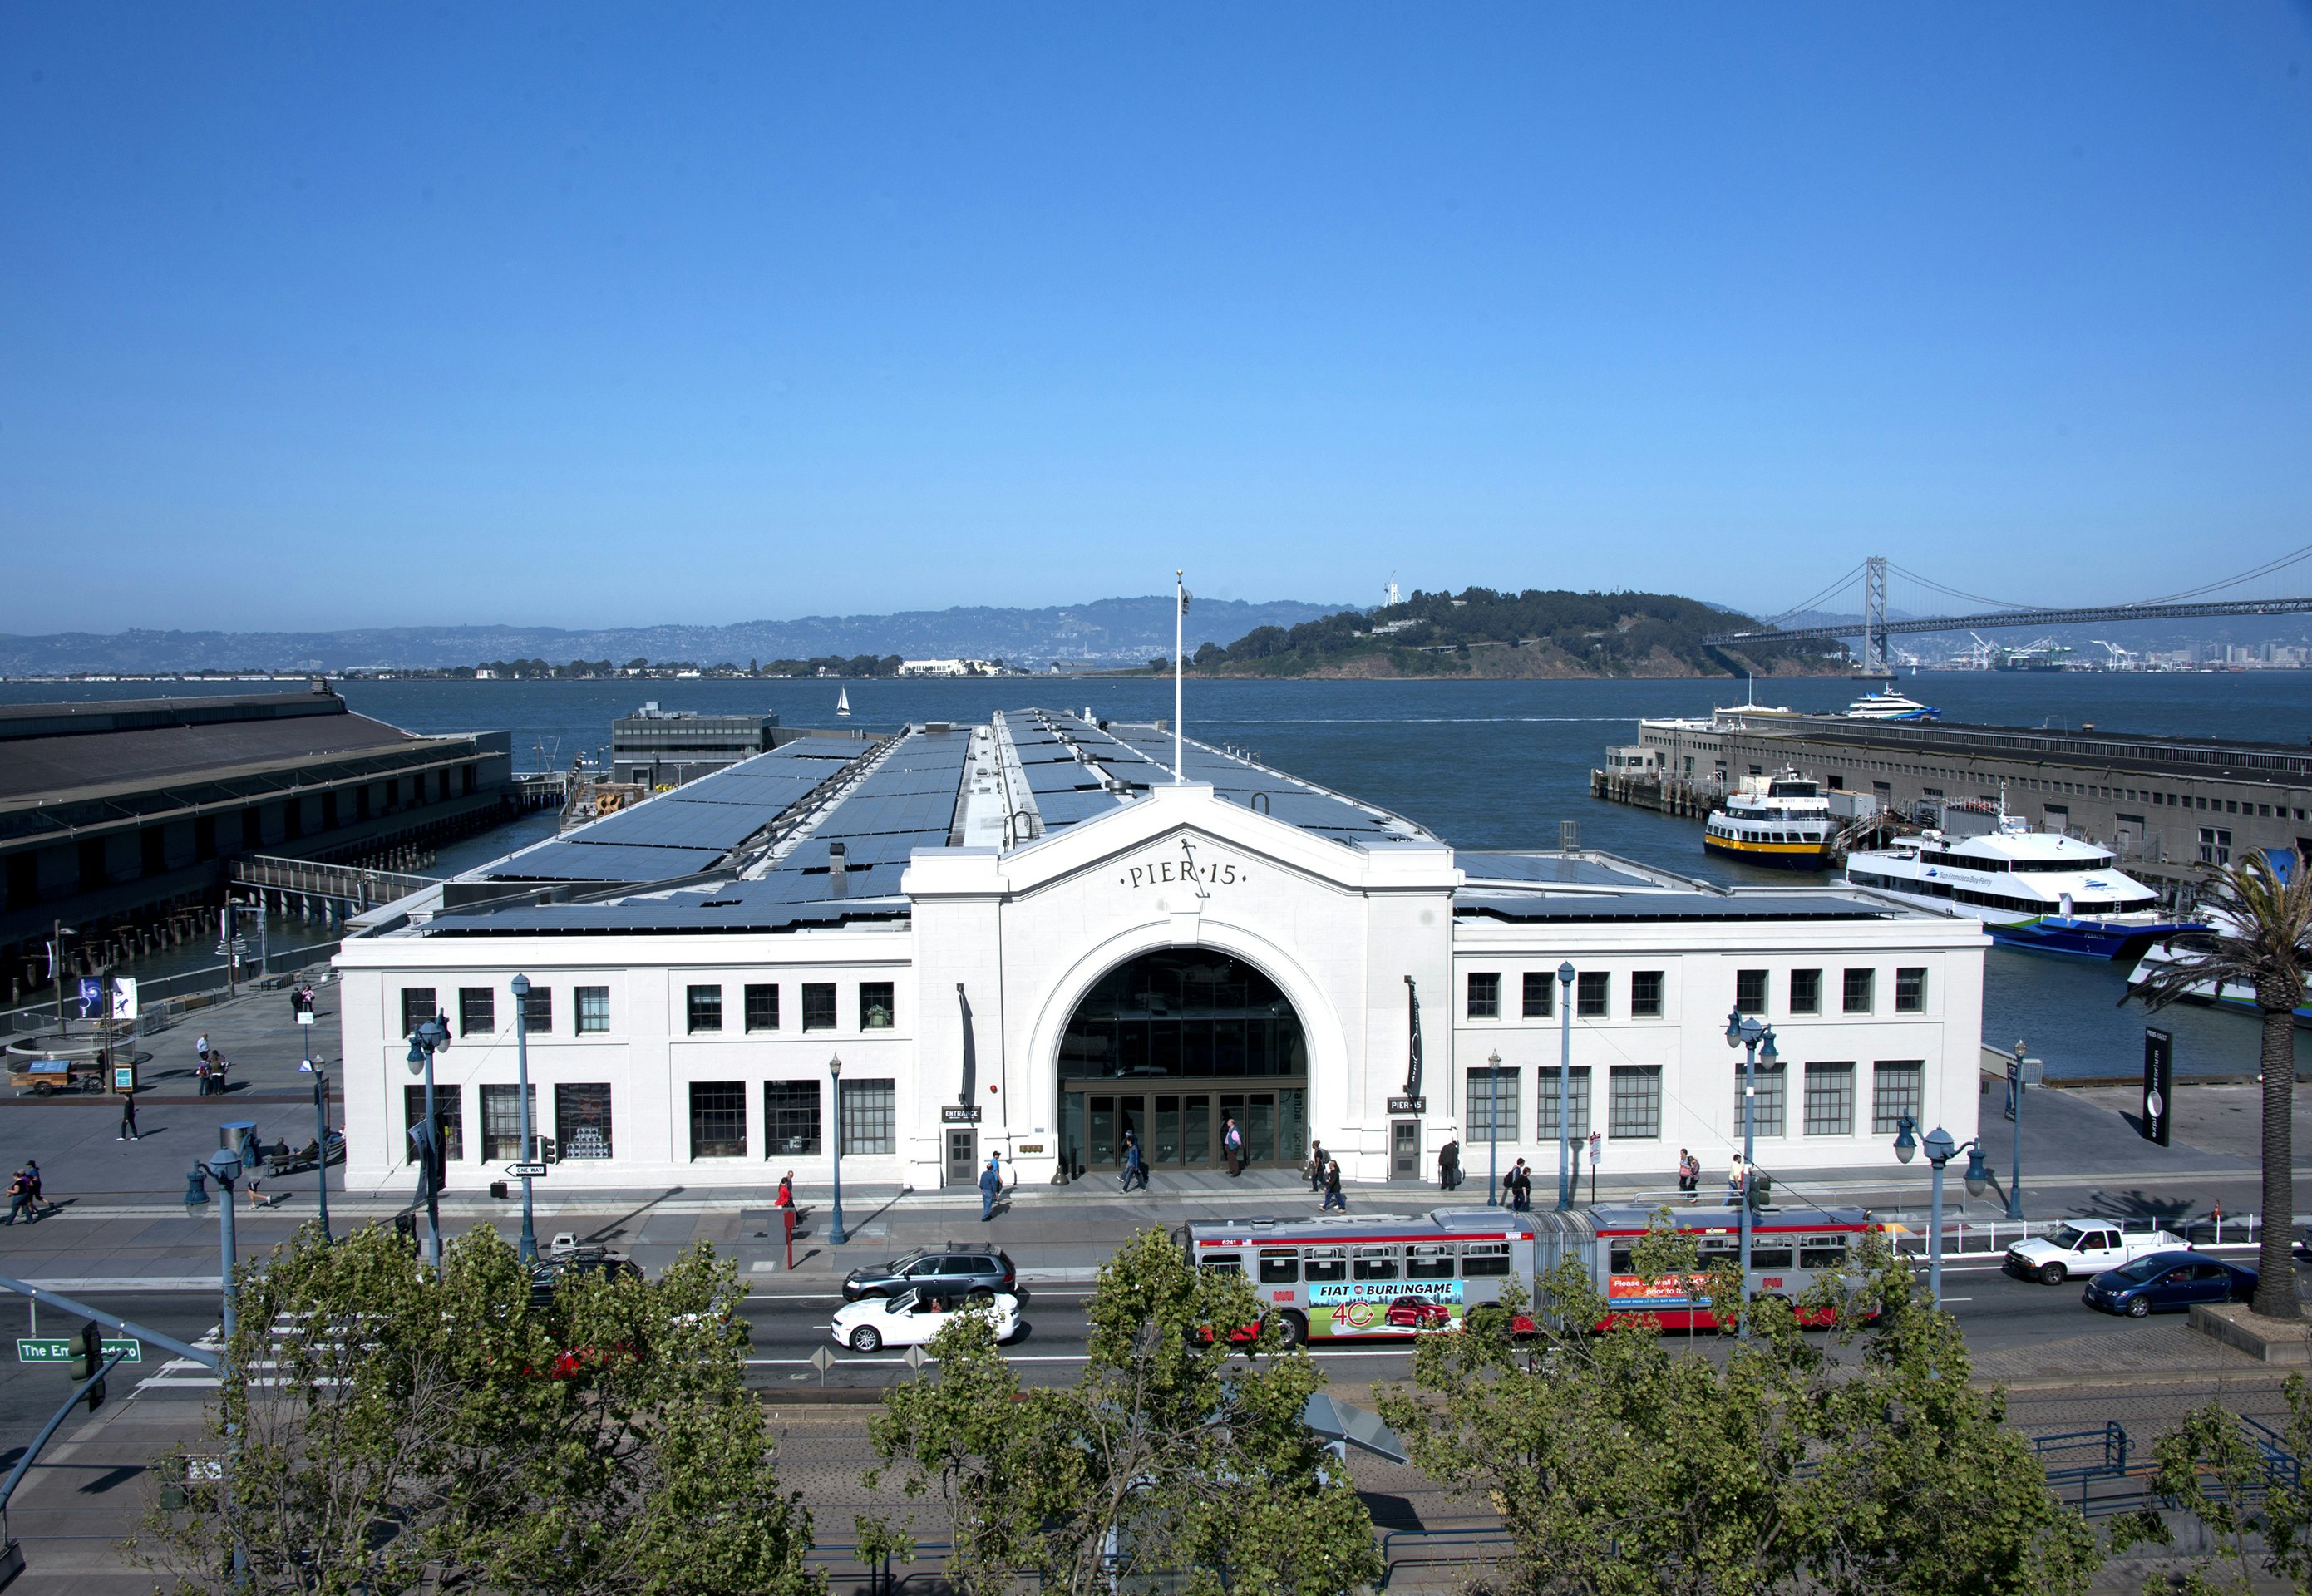 Ticket to Ride: San Francisco – Exploratorium